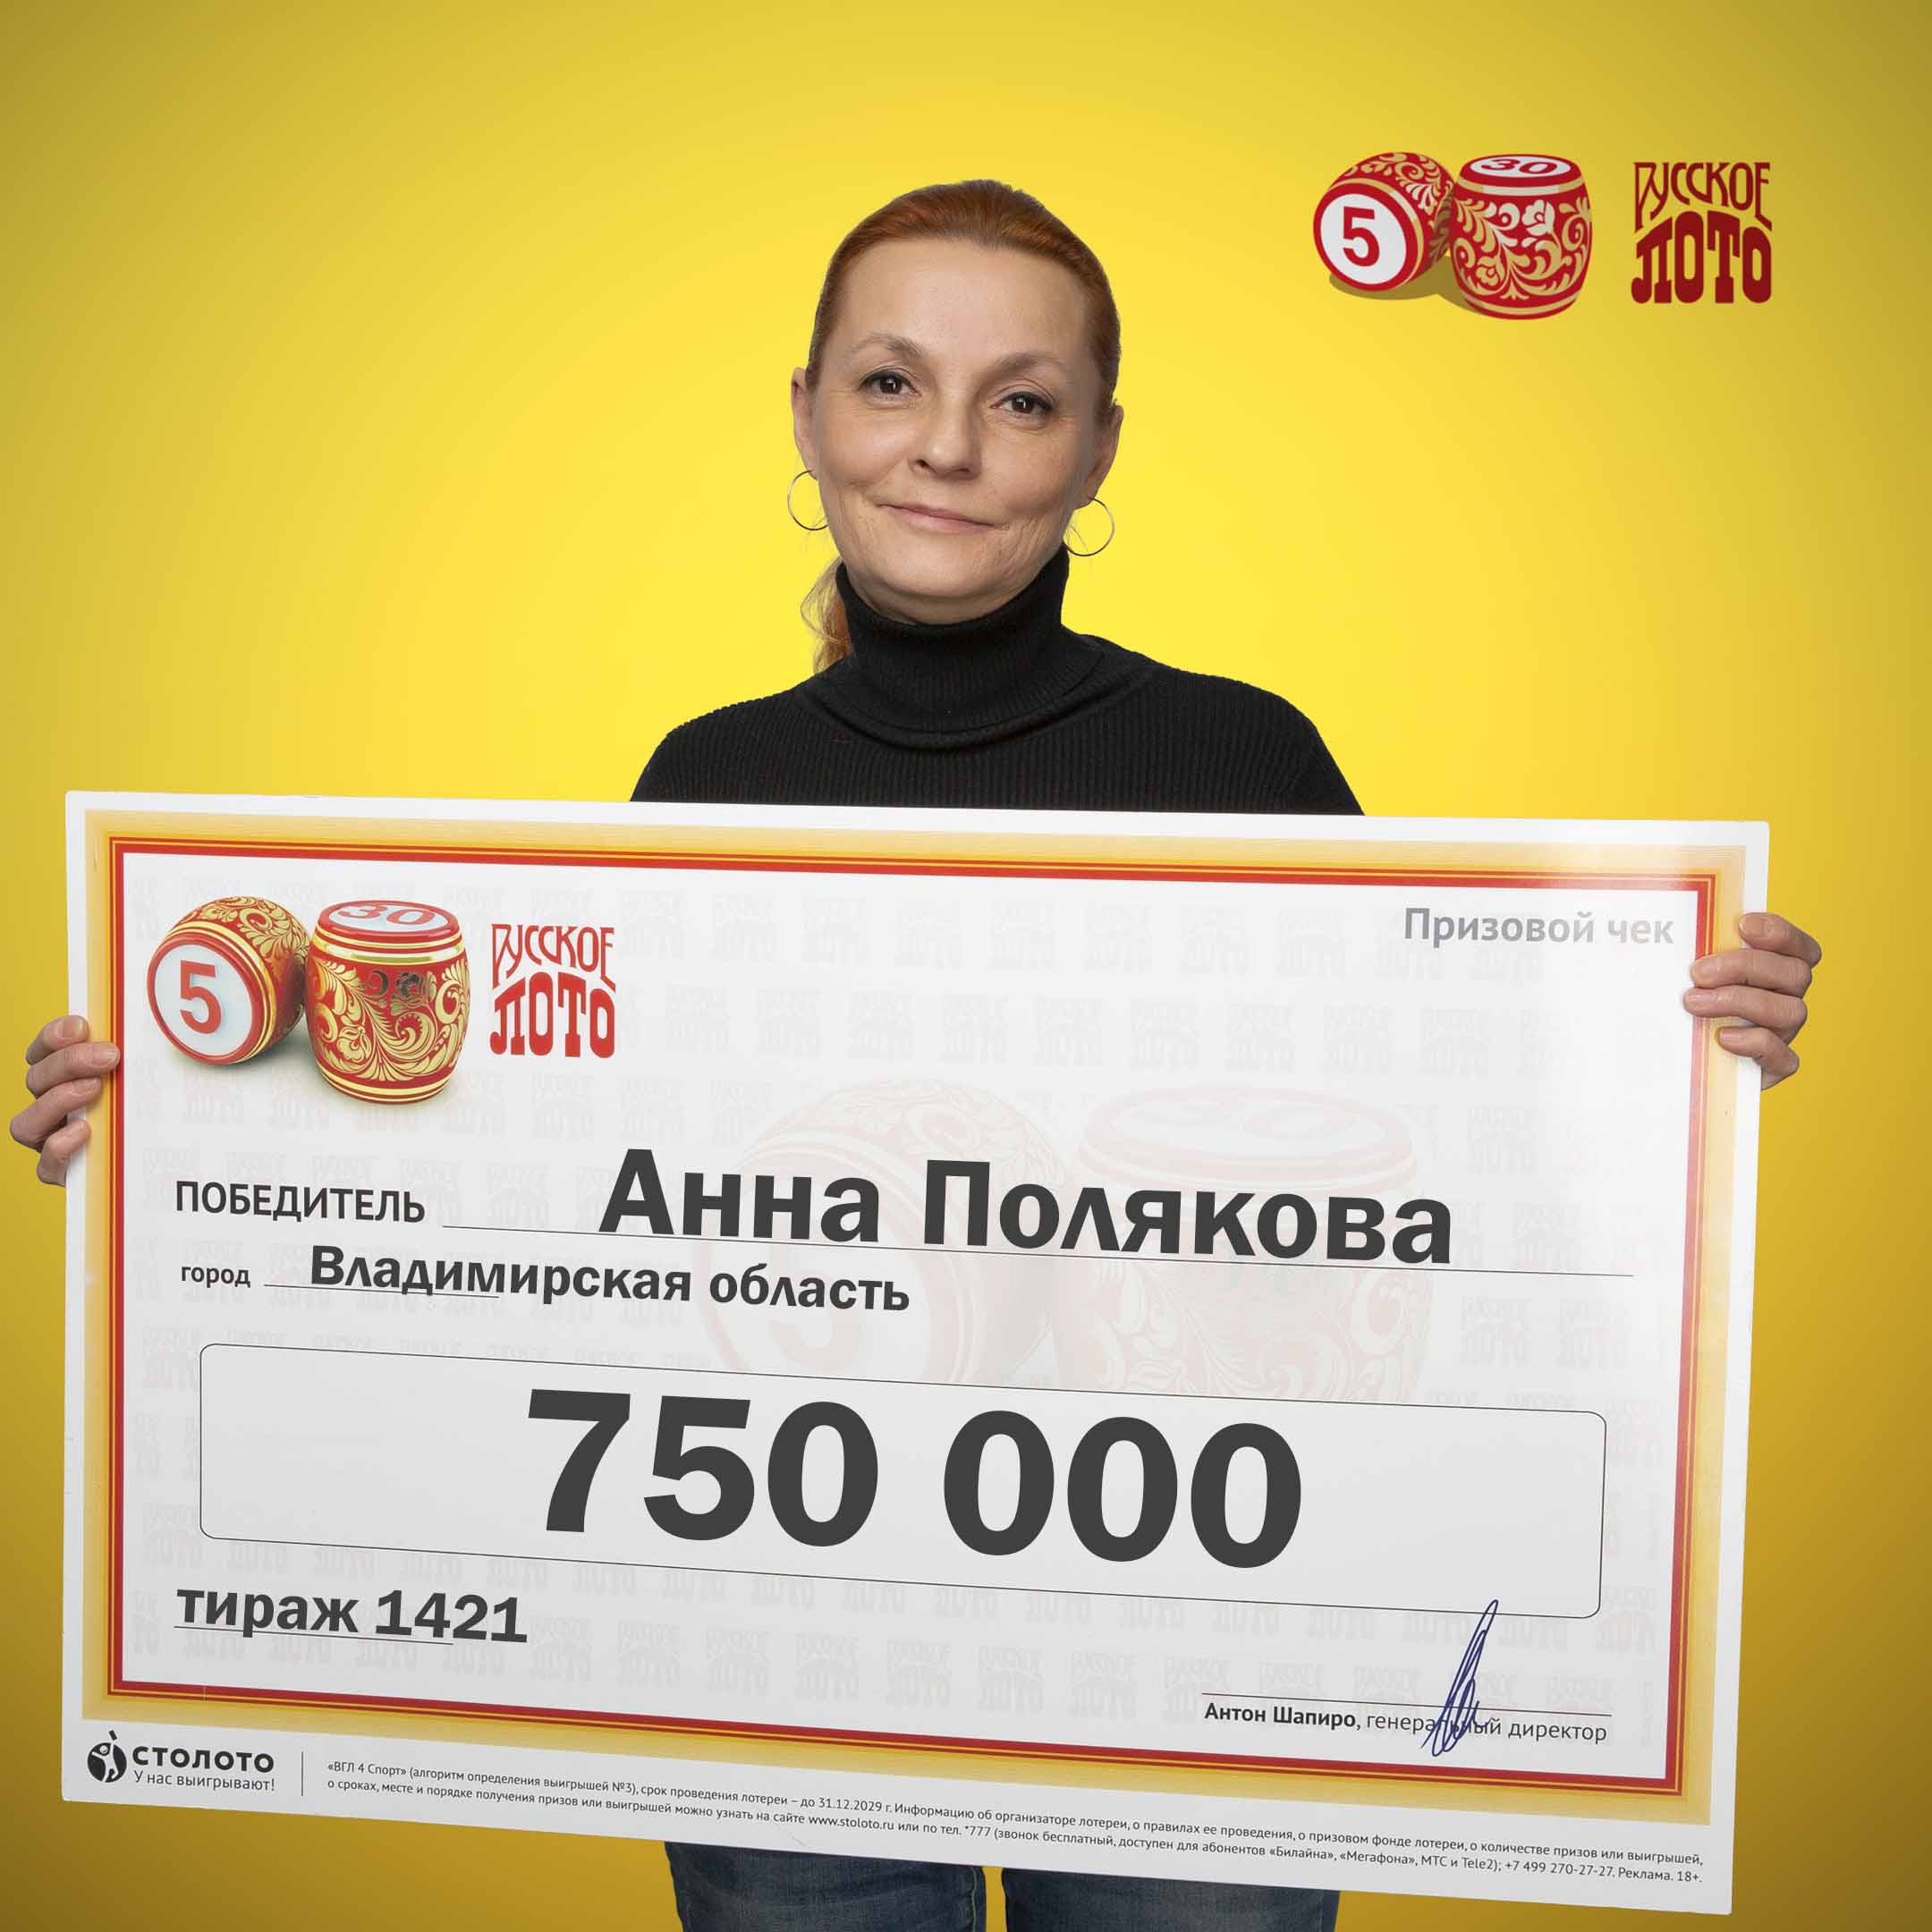 Жительница Владимирской области Анна Полякова выиграла в лотерею 750 тысяч рублей, причем о возможной победе любительница карт Таро знала заранее.